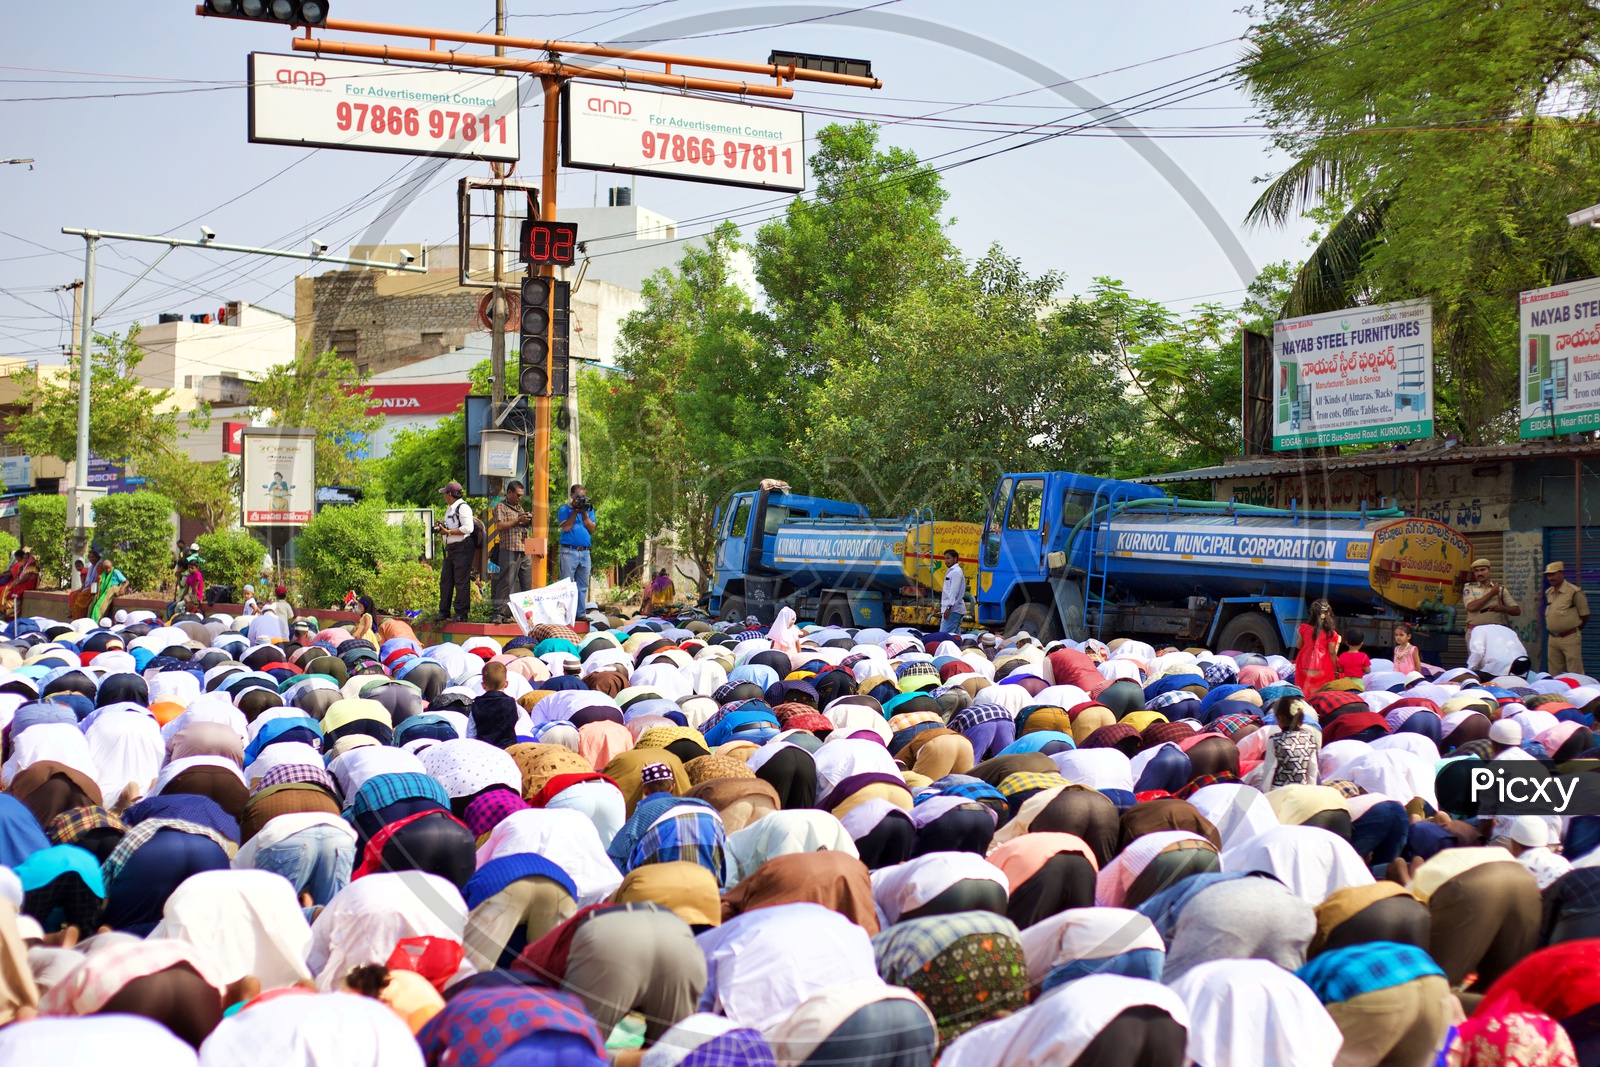 Muslims doing prayers under a traffic light.